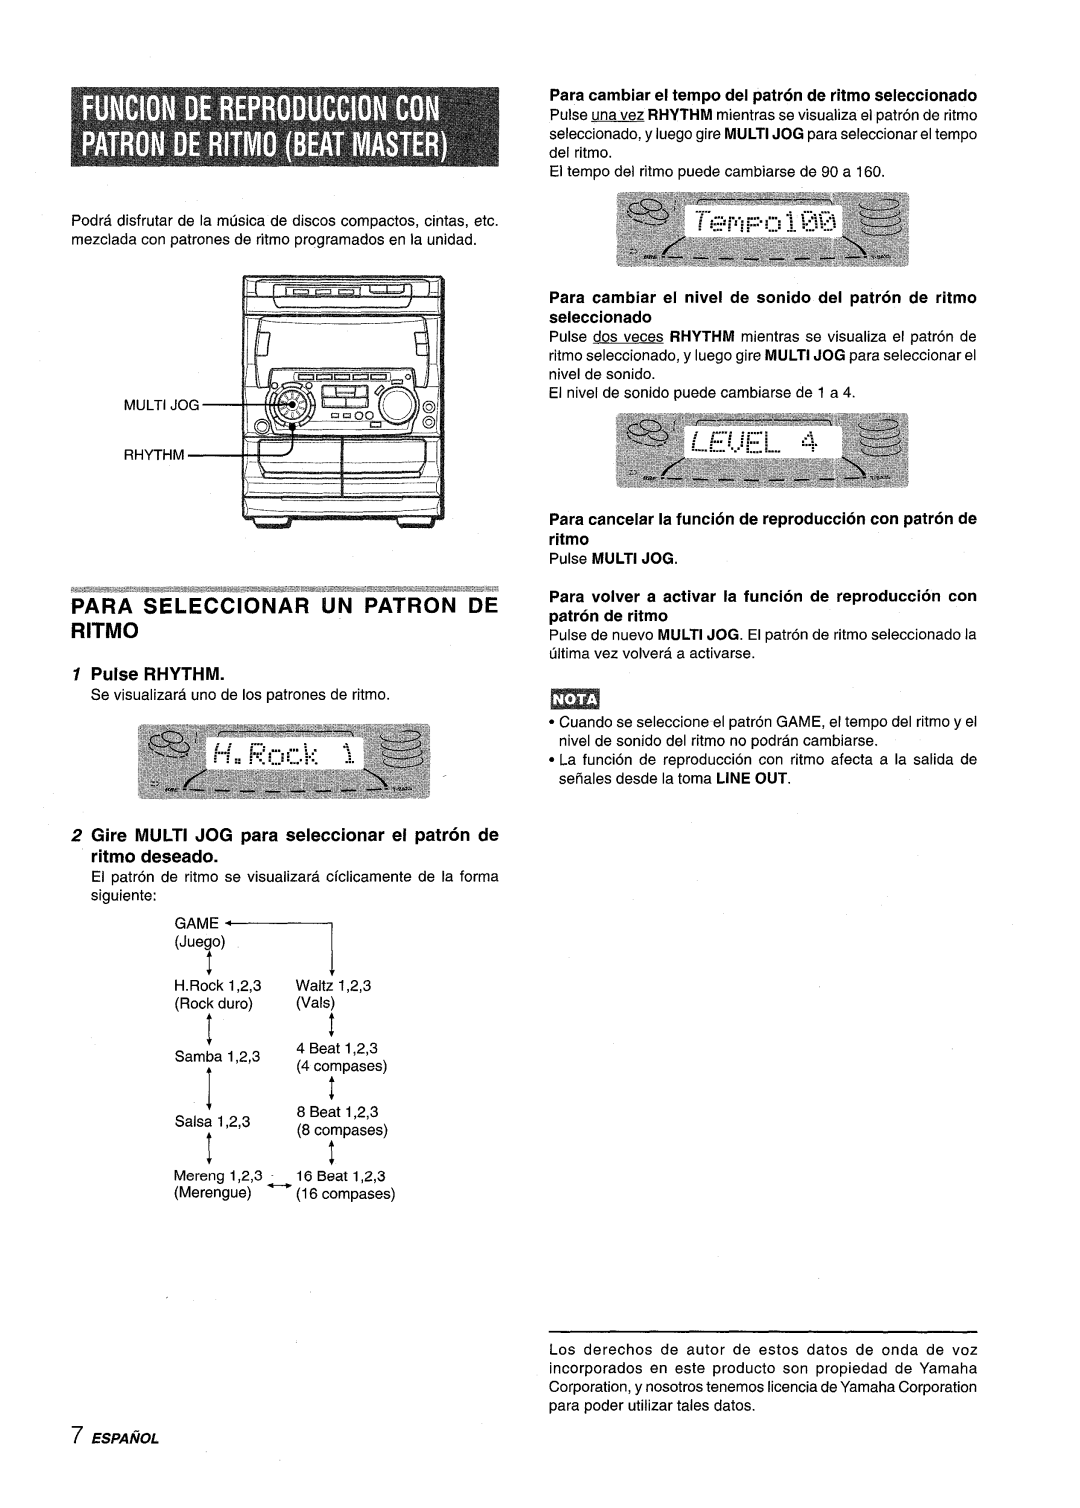 Sony NSX-A707 manual Para Seleccionar Un Patron De Ritmo, Pulse RHYTHM, Pulse MULTI JOG 